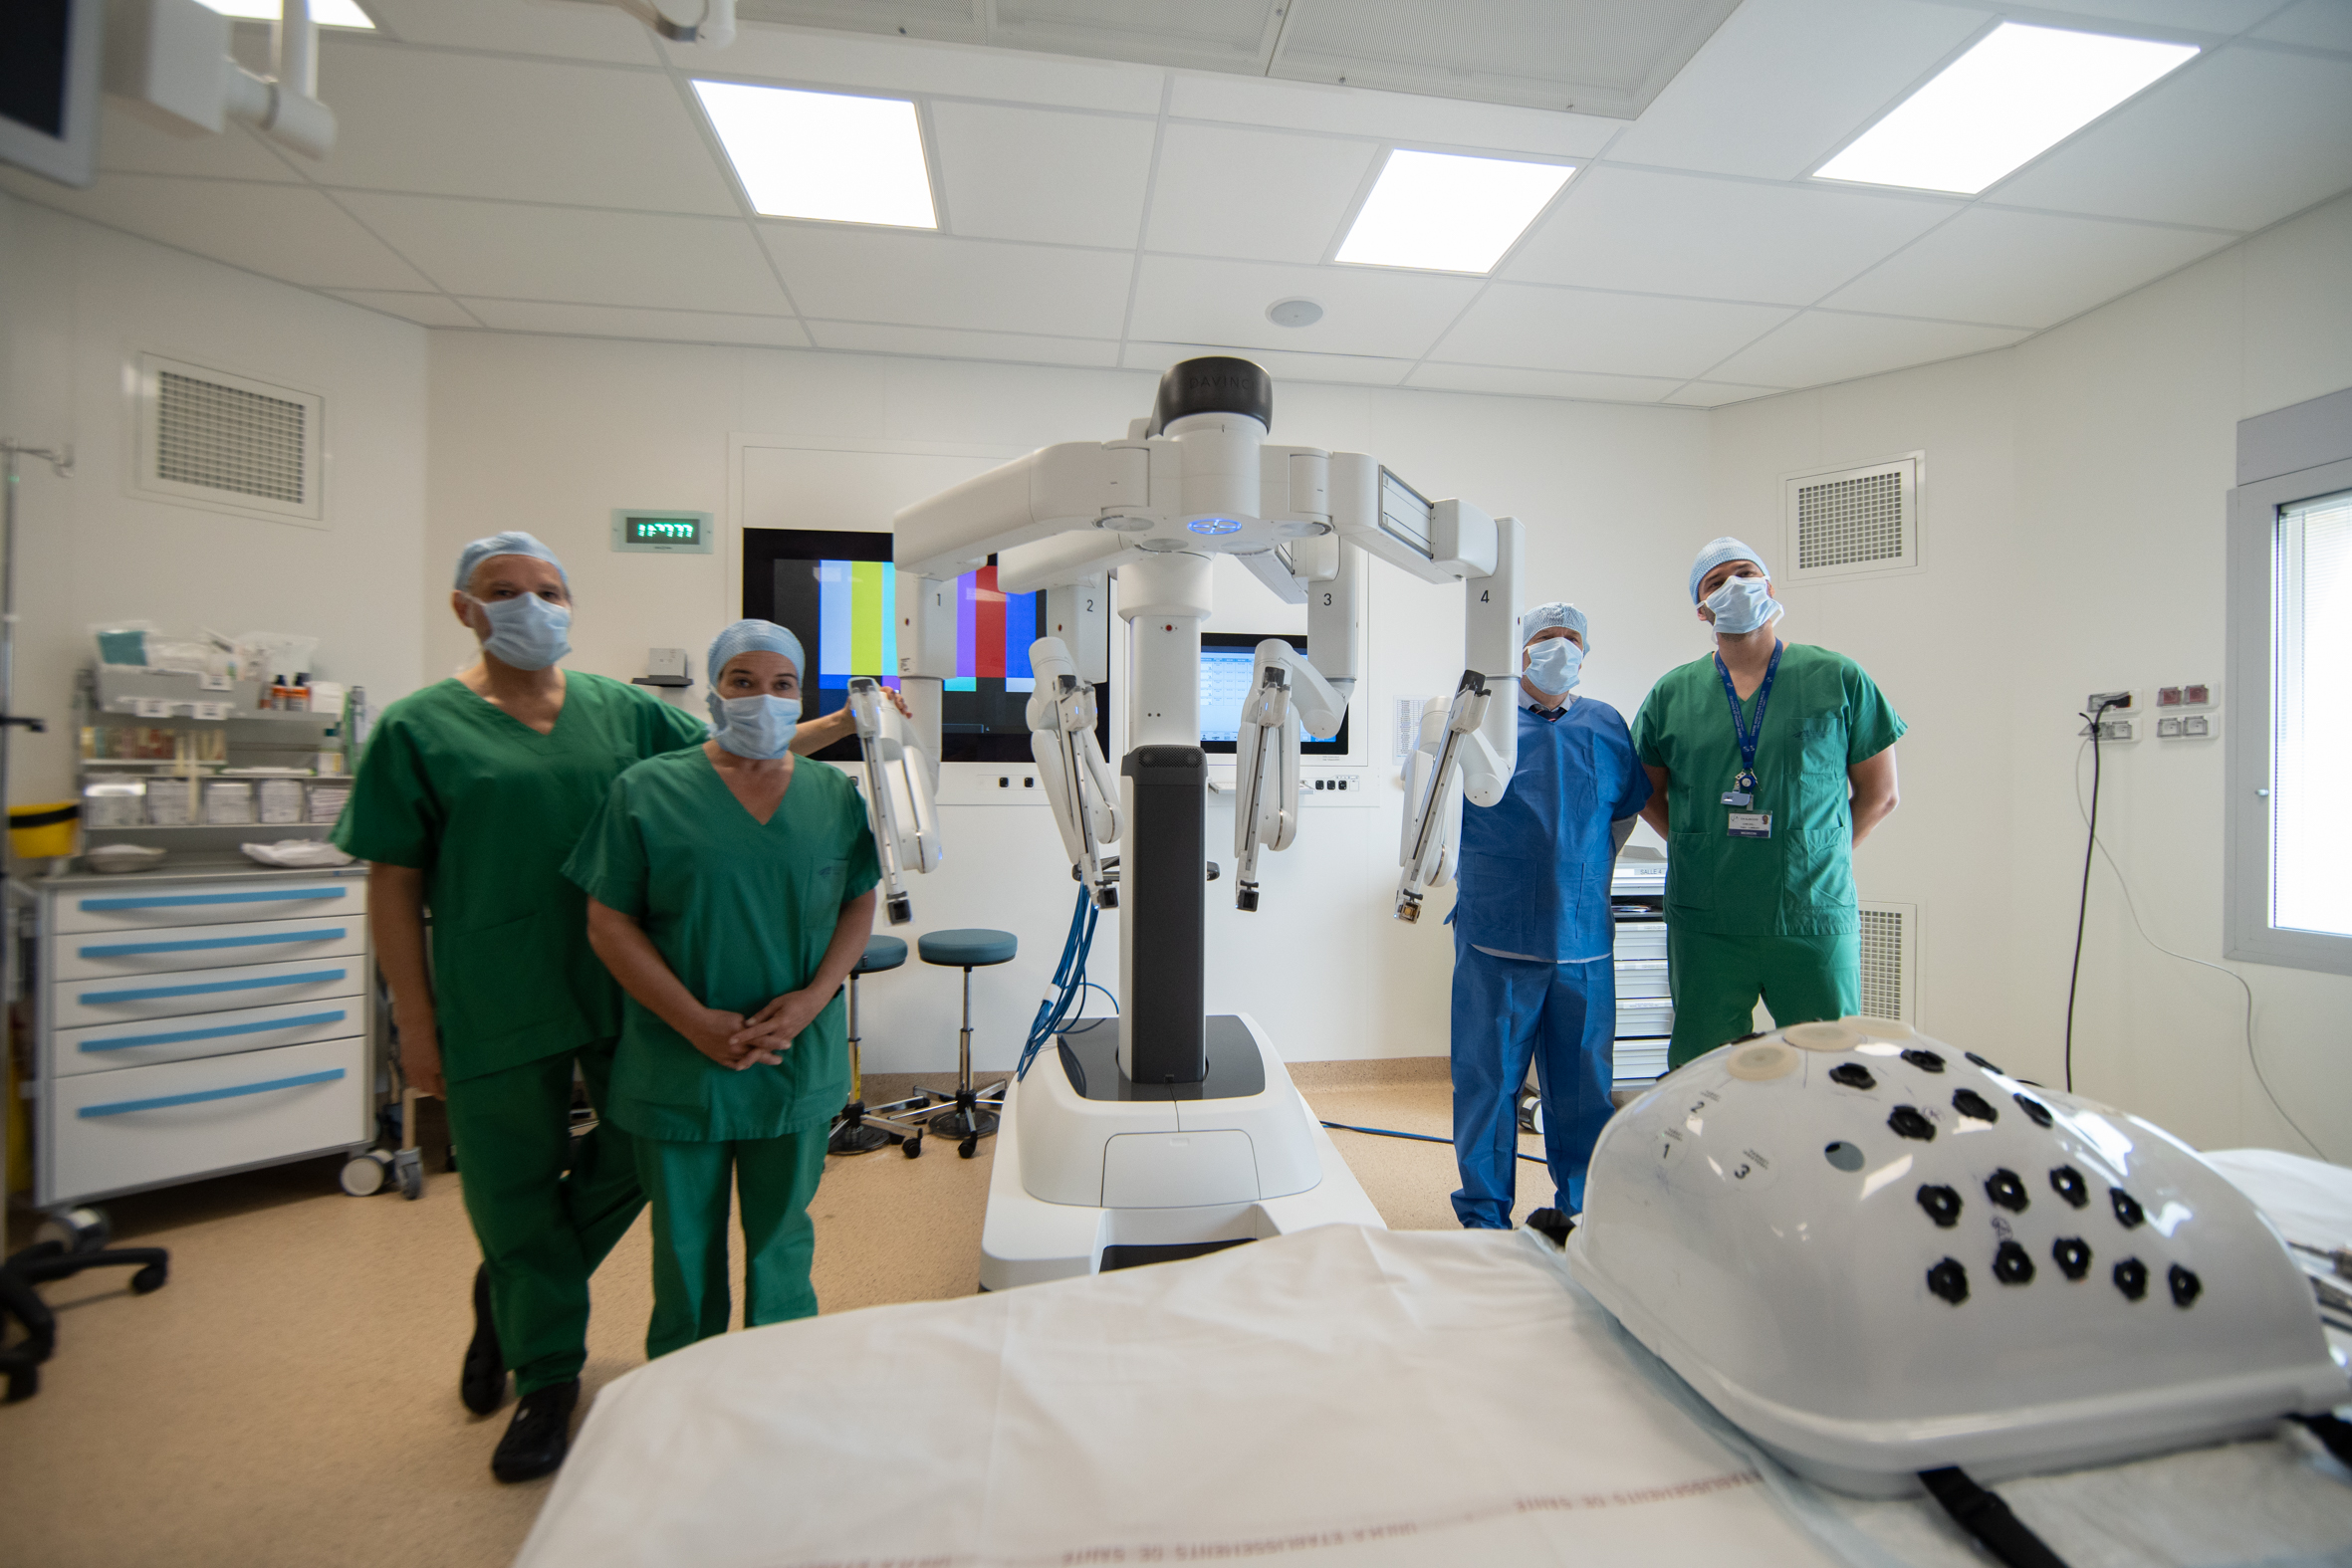 L’hôpital d’Ajaccio se dote d’un robot chirurgical qui va améliorer le confort des patients